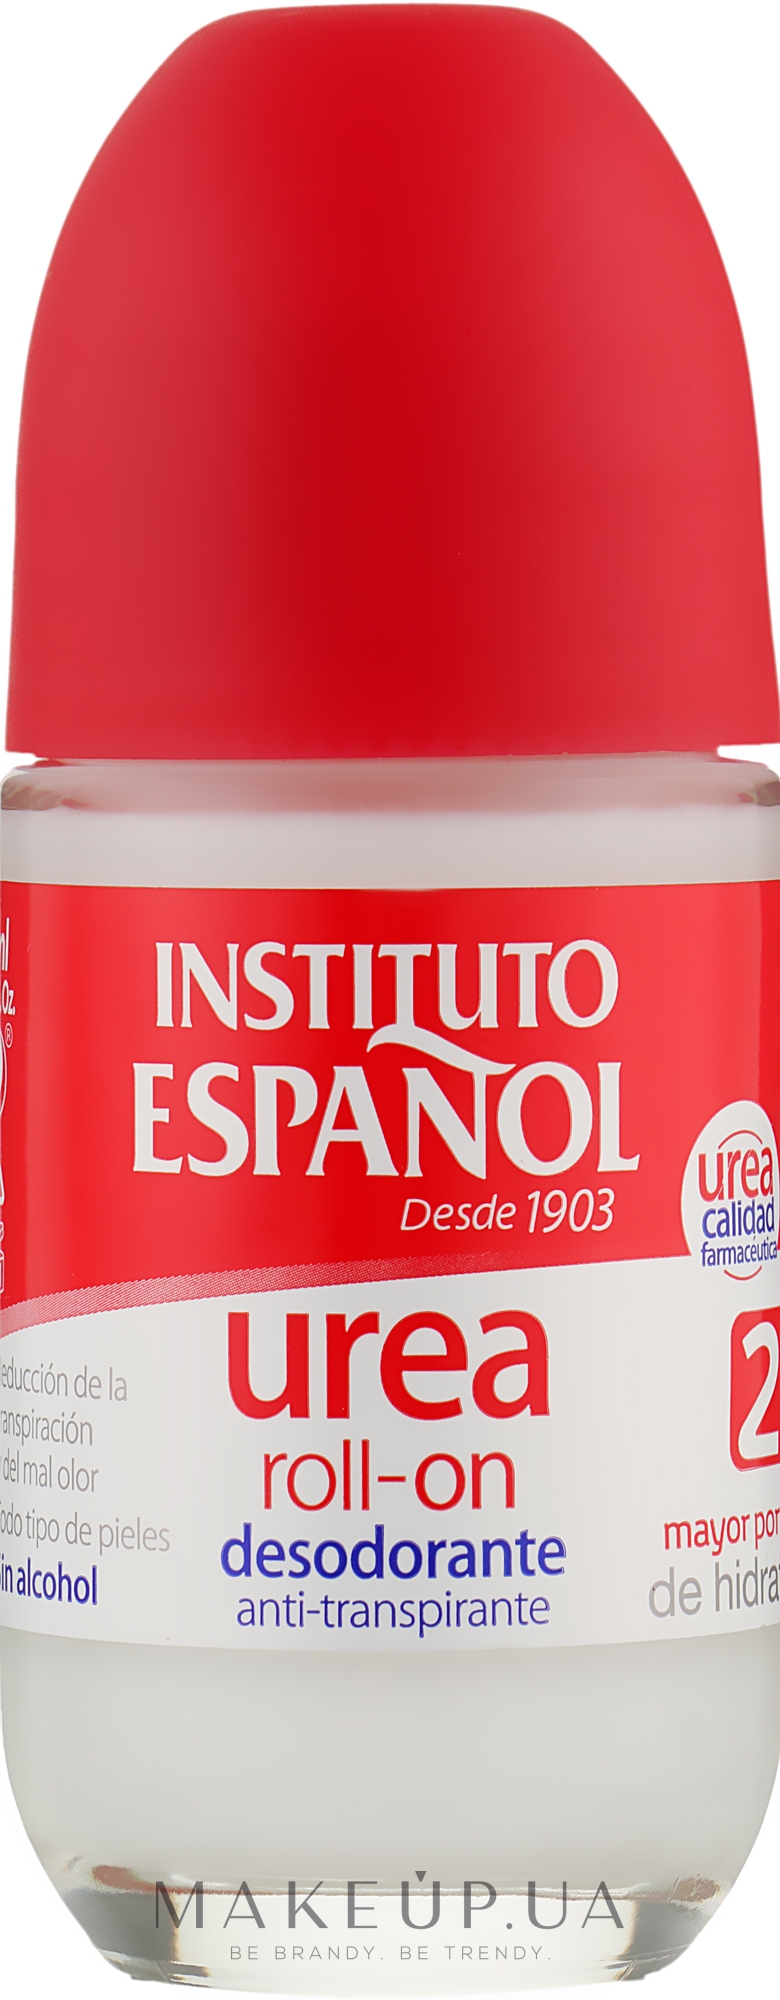 Desodorante Roll-on Urea - Instituto Español